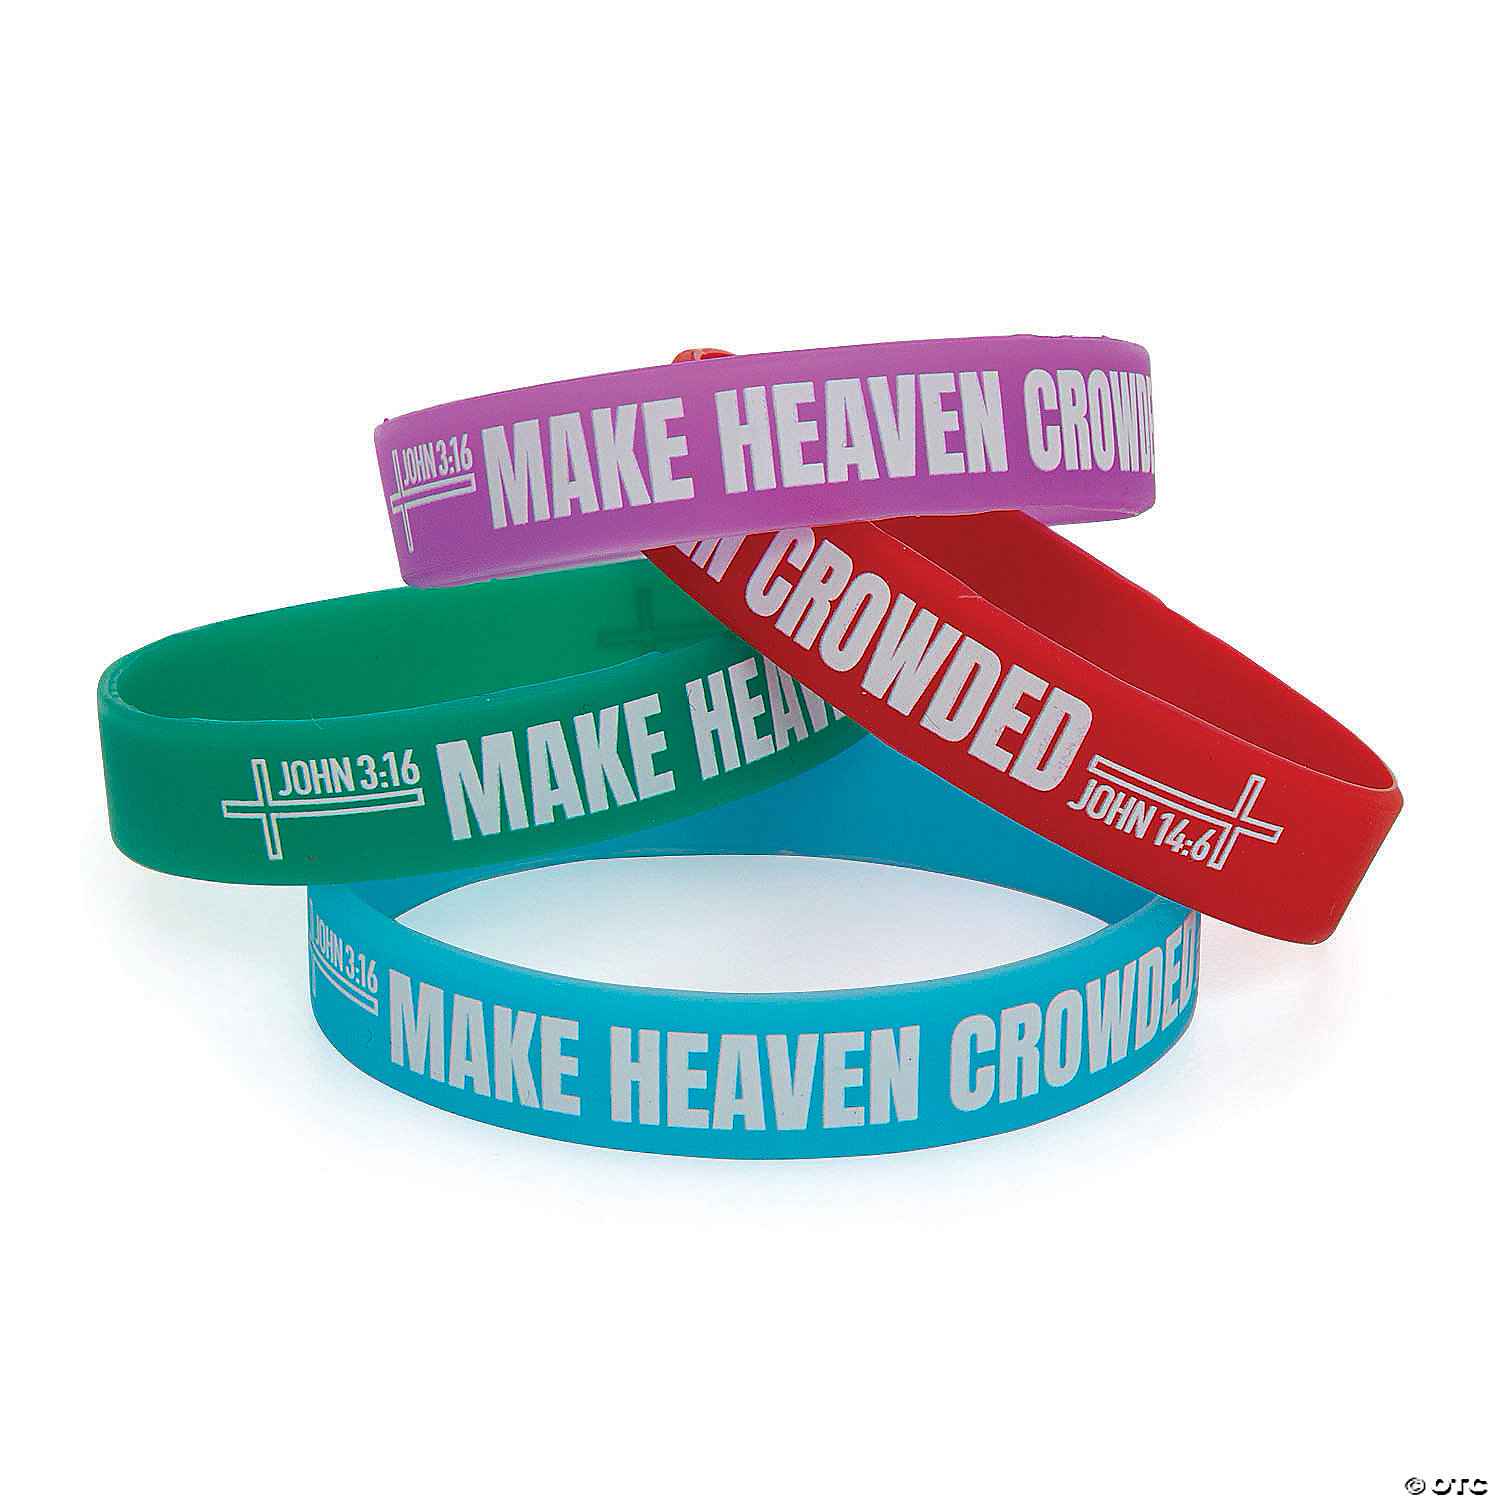 Make Heaven Crowded Rubber Bracelets - 12 Pc. | Oriental Trading